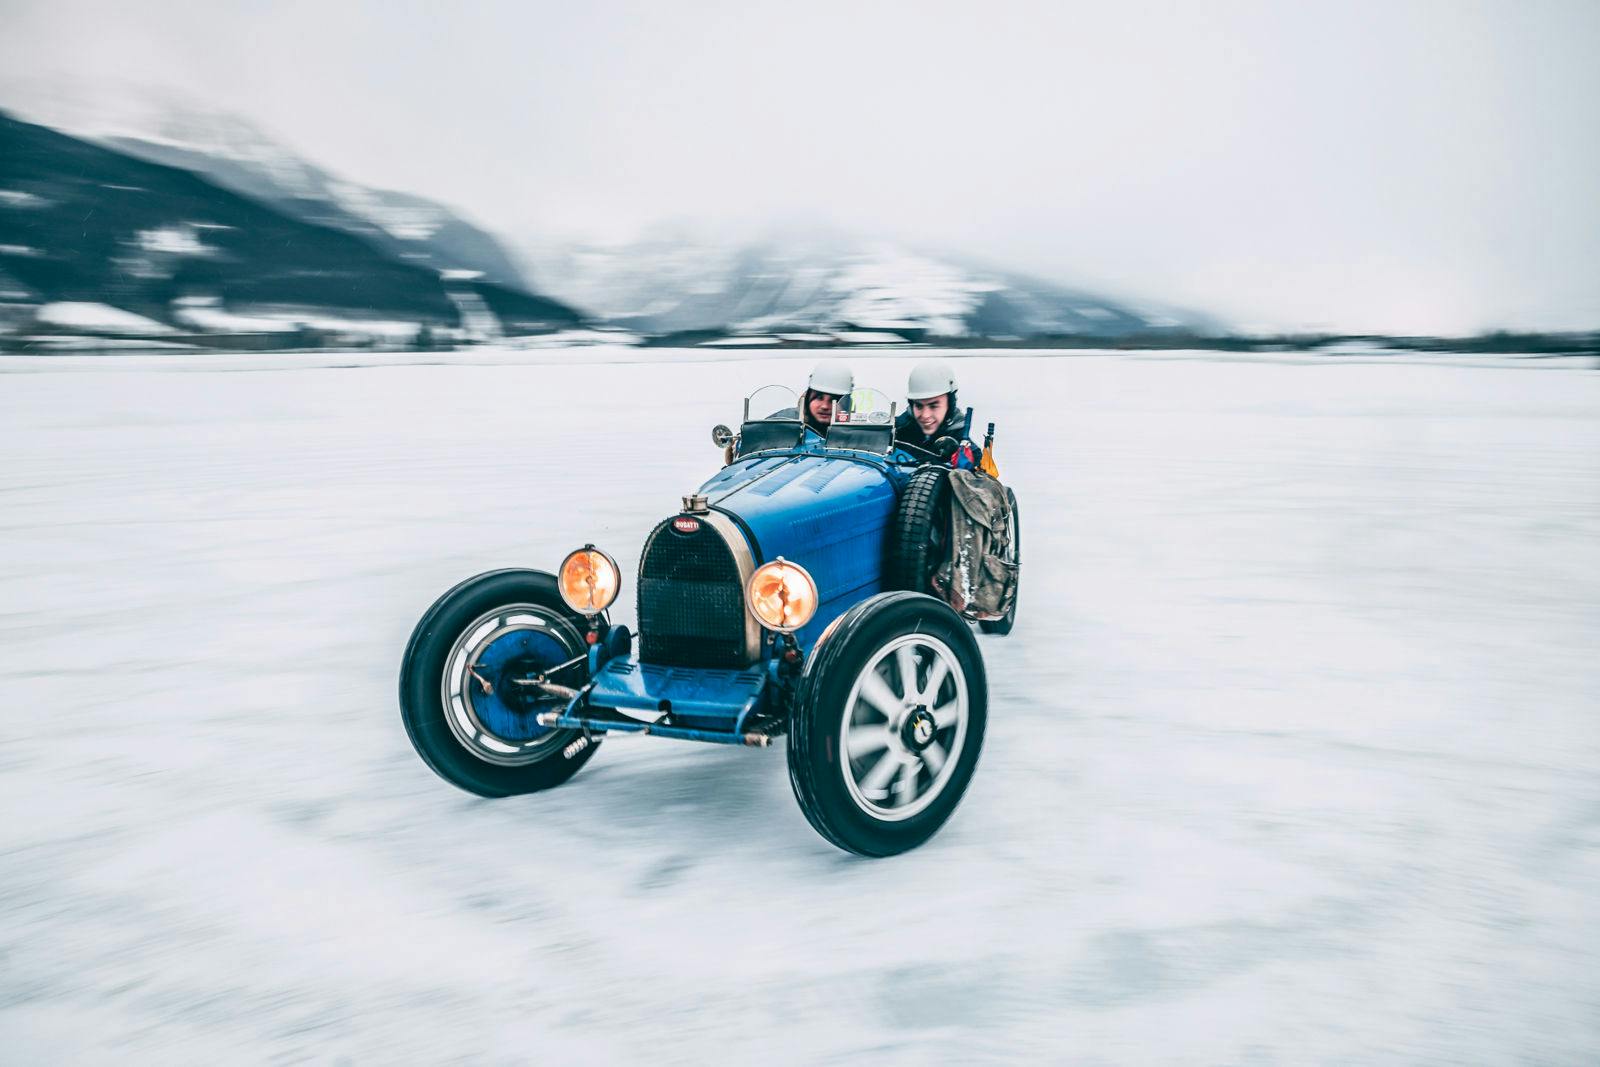 62 ans après la toute première apparition de Bugatti sur la glace, la marque de luxe française participera de nouveau à la course GP Ice Race d'Autriche avec une Bugatti Type 51 et une Bugatti Baby II.